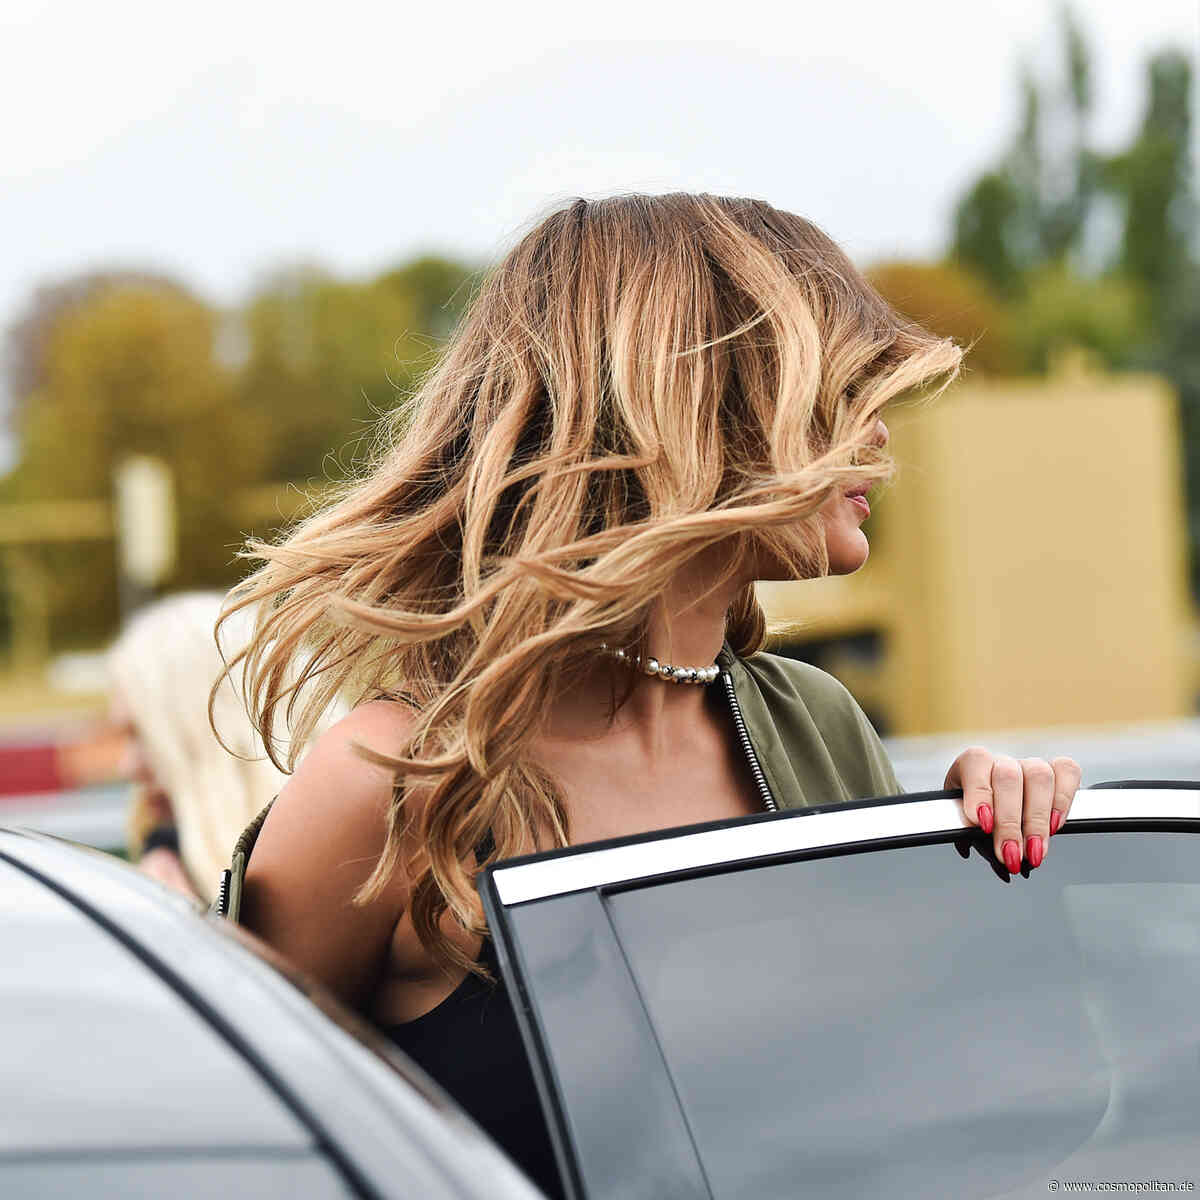 Wassertrick: Der Blitz-Test zeigt, wie kaputt dein Haar tatsächlich ist - Cosmopolitan